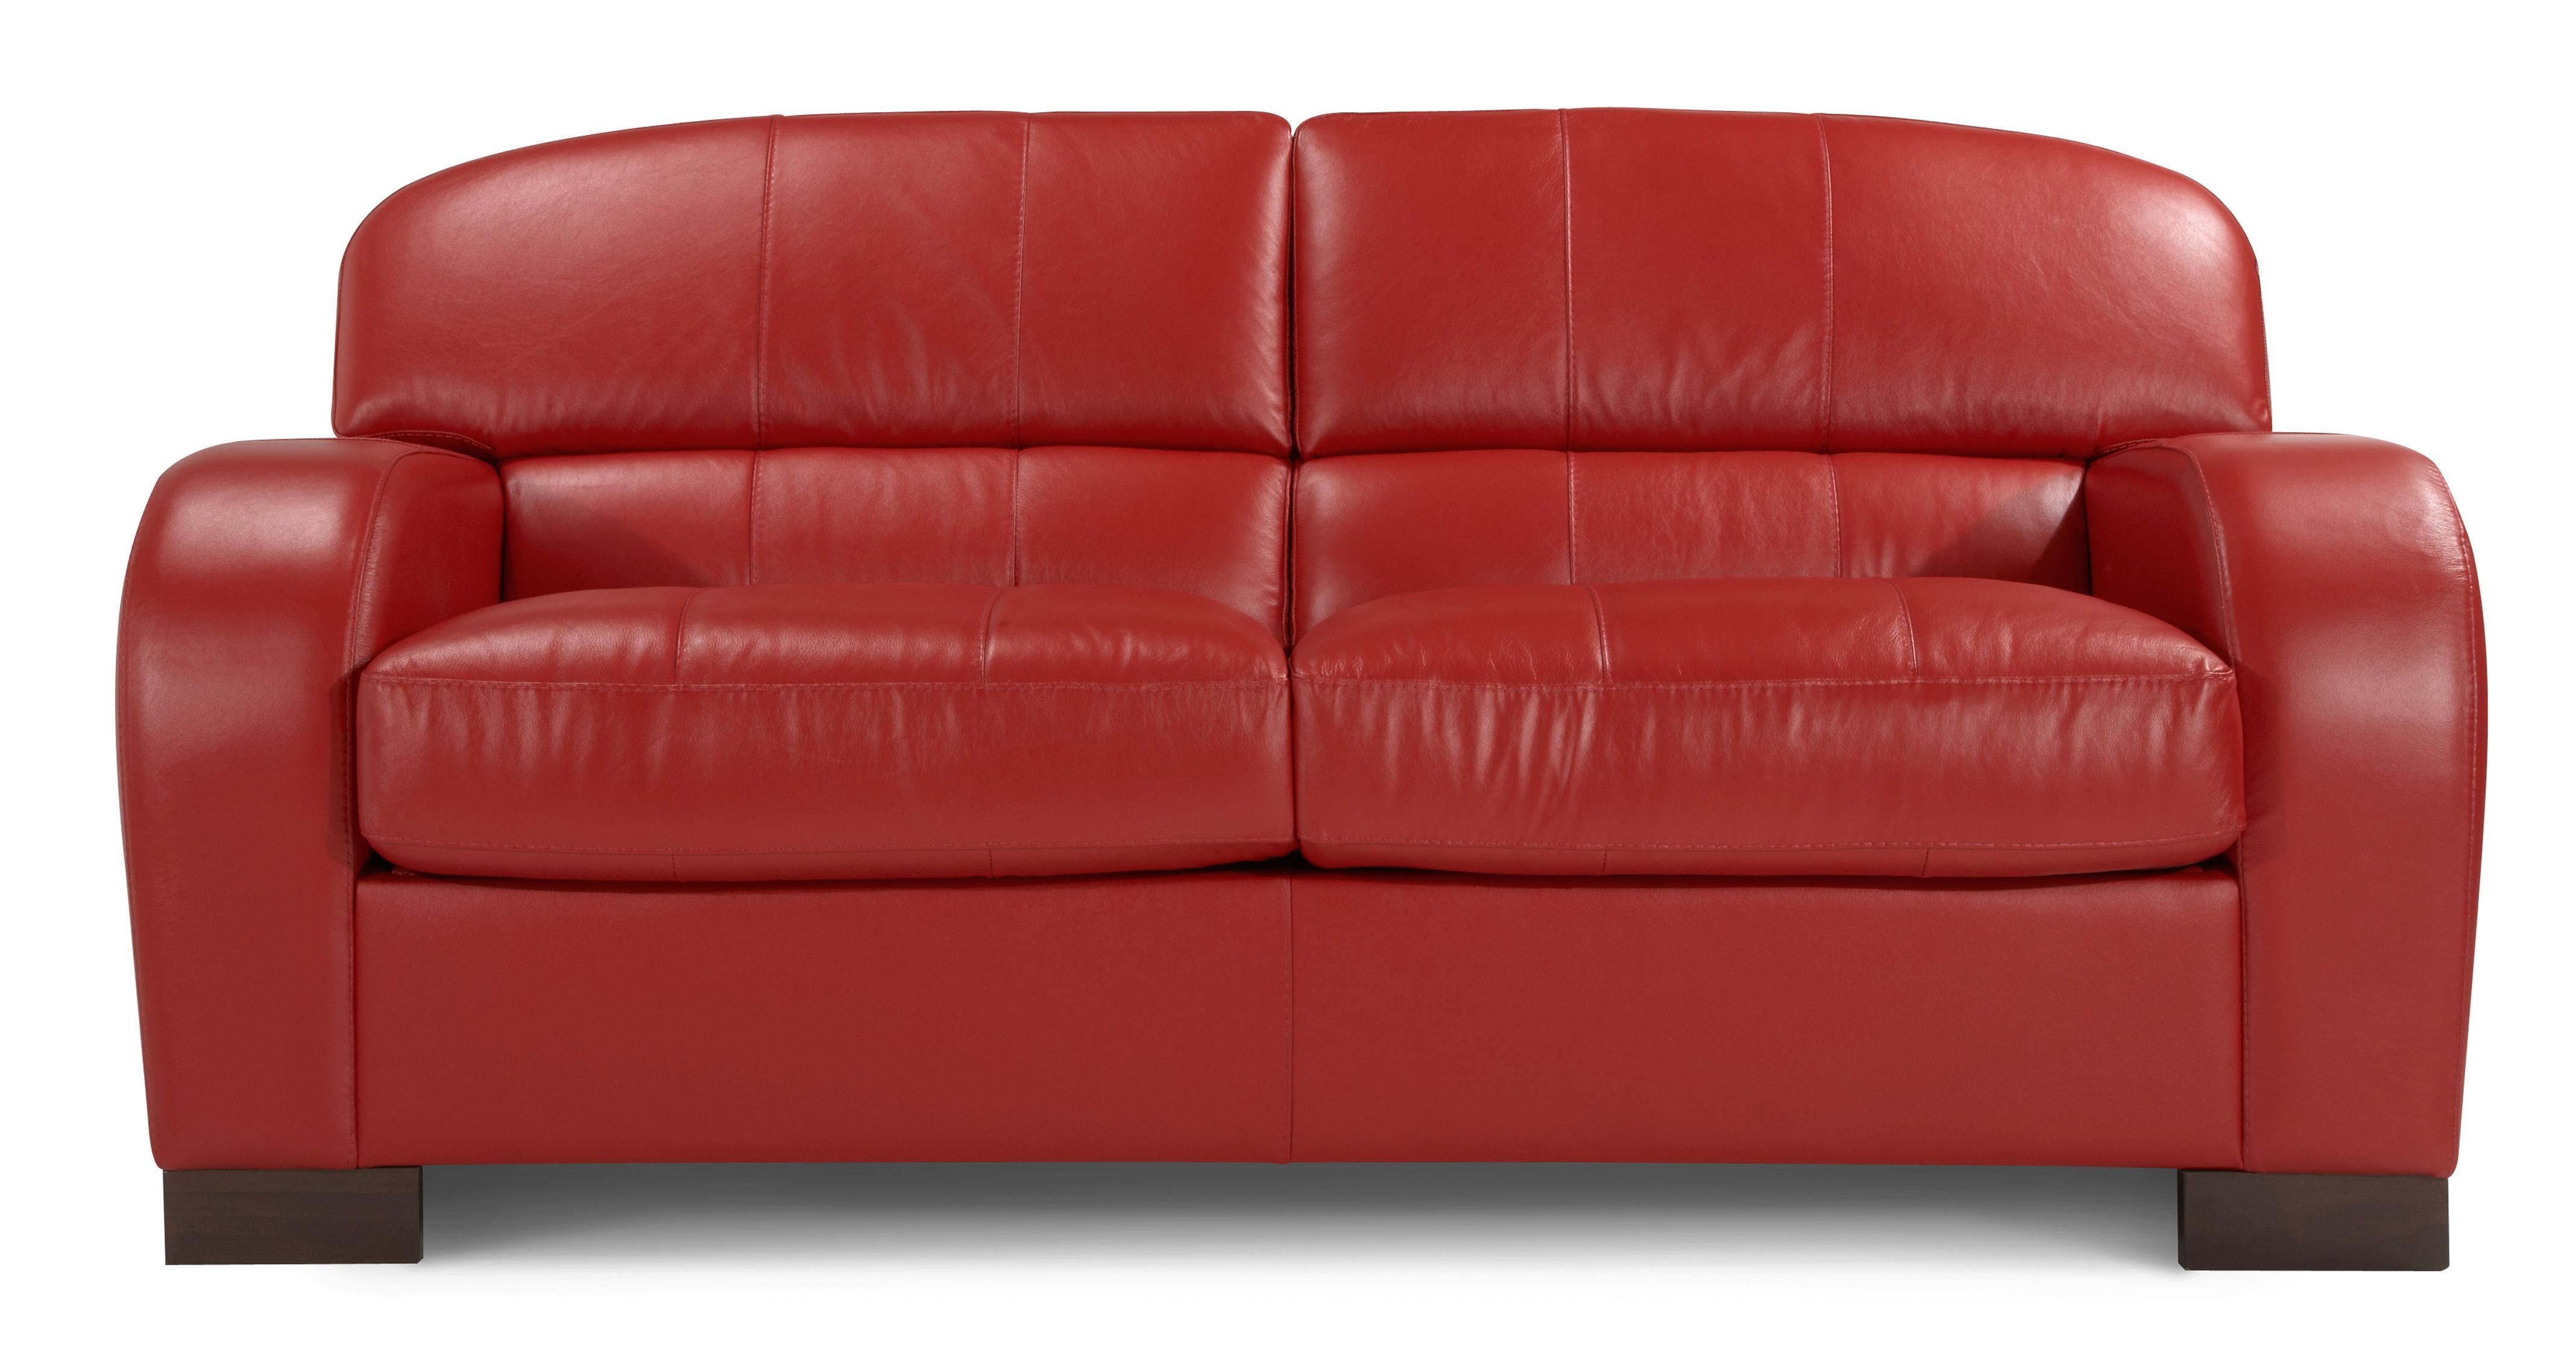 ebay dfs leather sofa